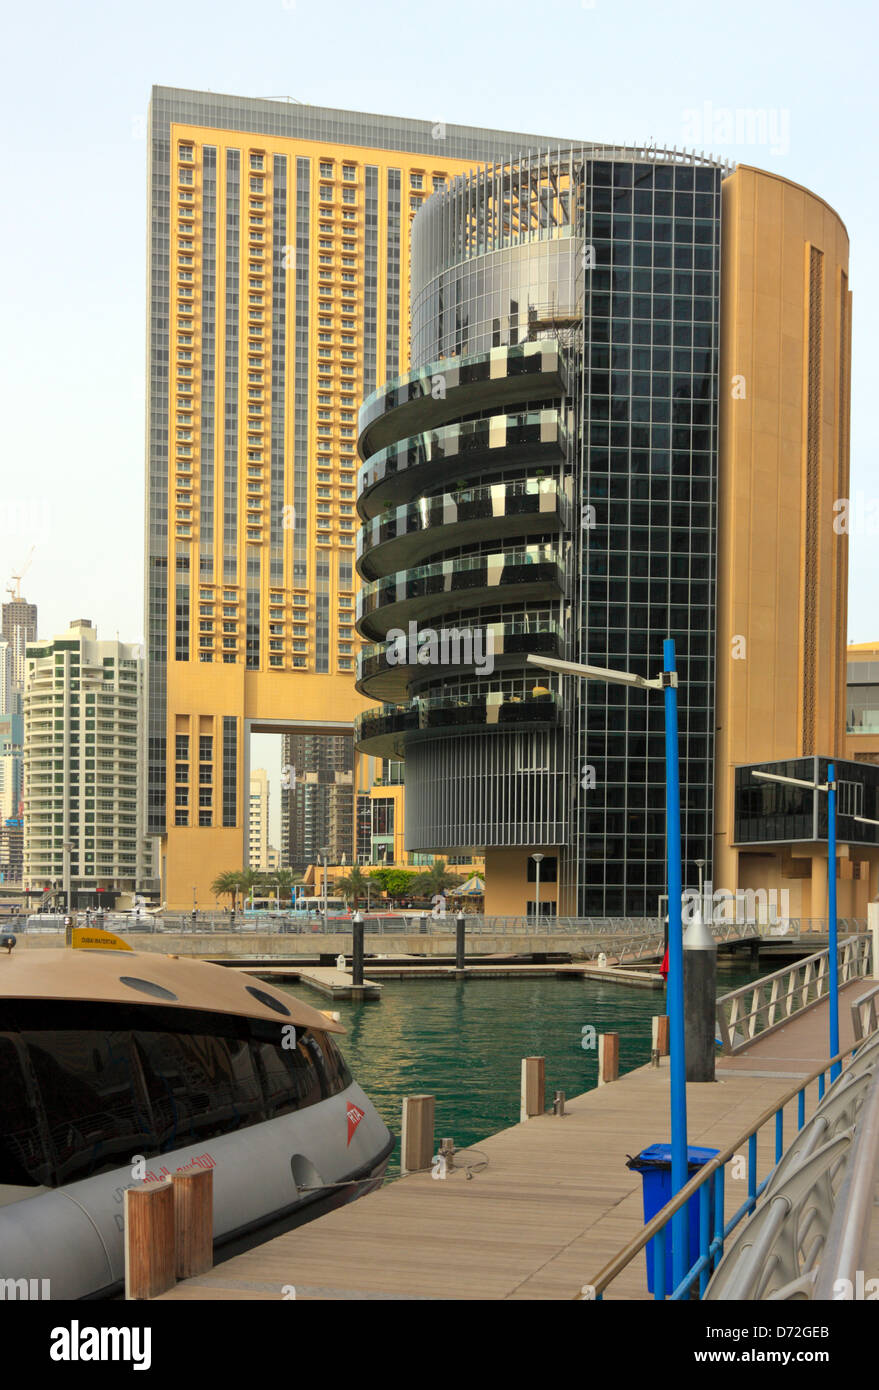 The Address Hotel, High Rise Buildings surrounding the Dubai Marina, United Arab Emirates, UAE Stock Photo